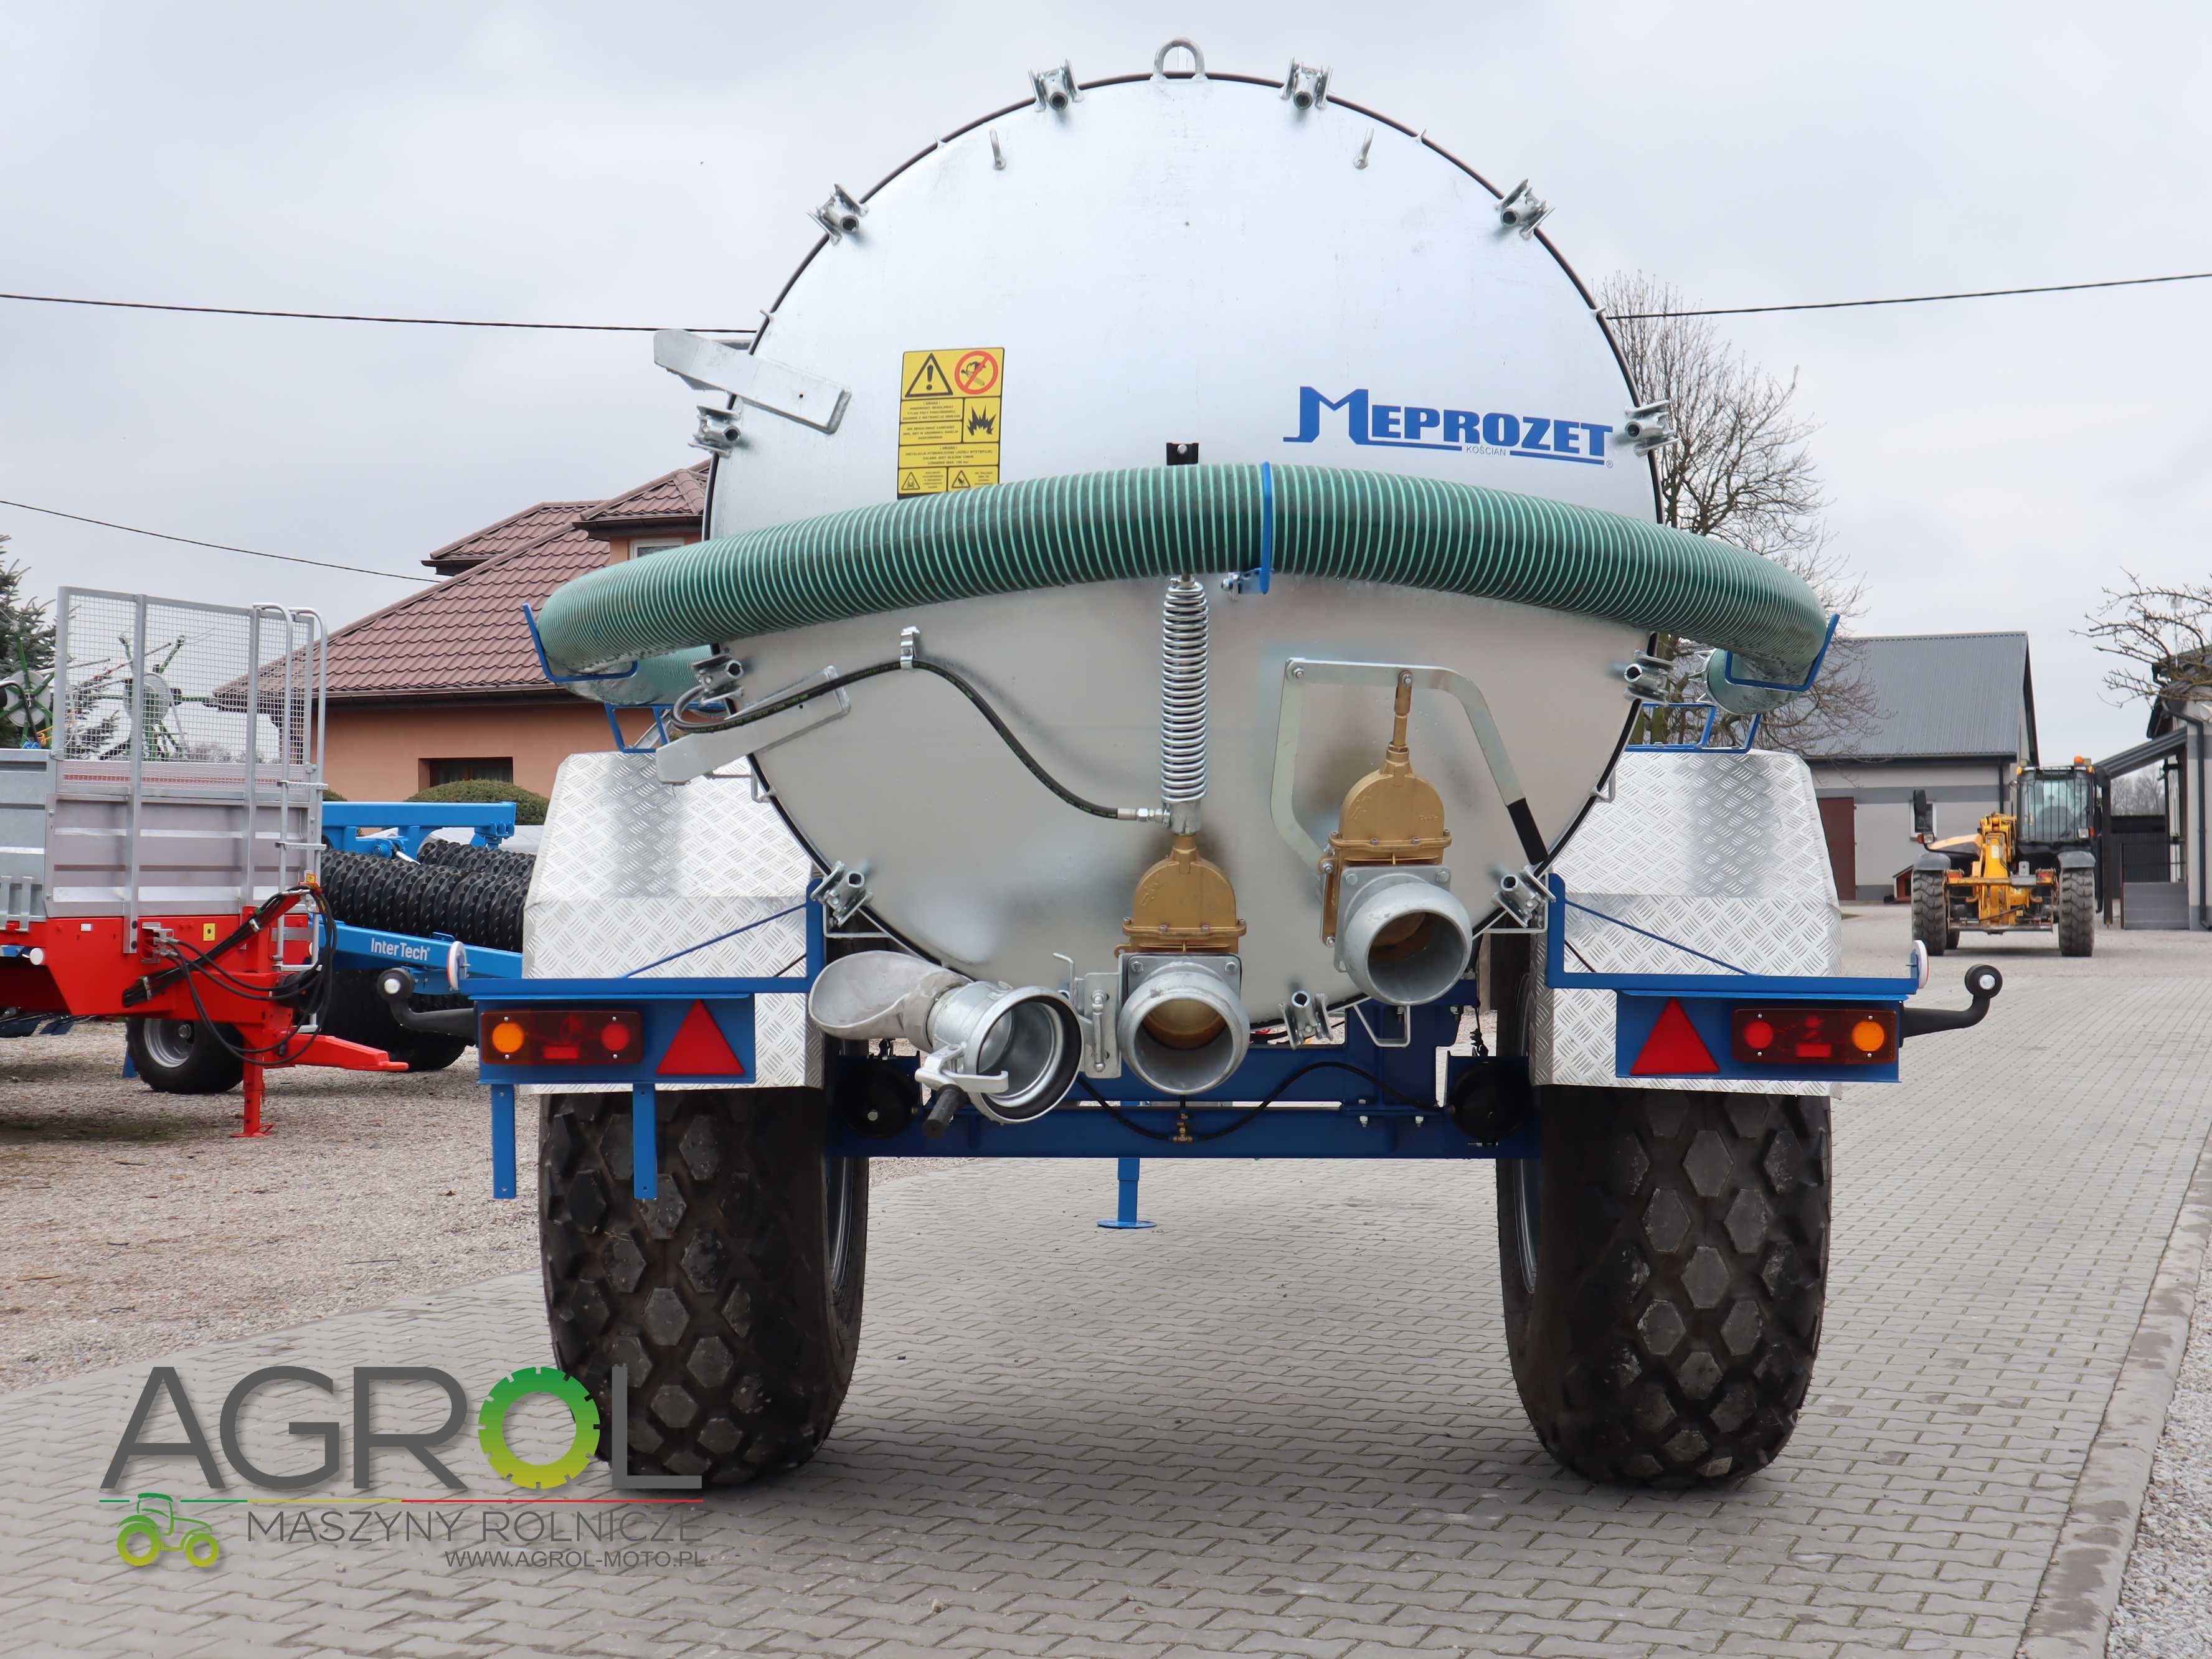 Wóz asenizacyjny MEPROZET 10000 litrów beczka do gnojowicy beczkowóz